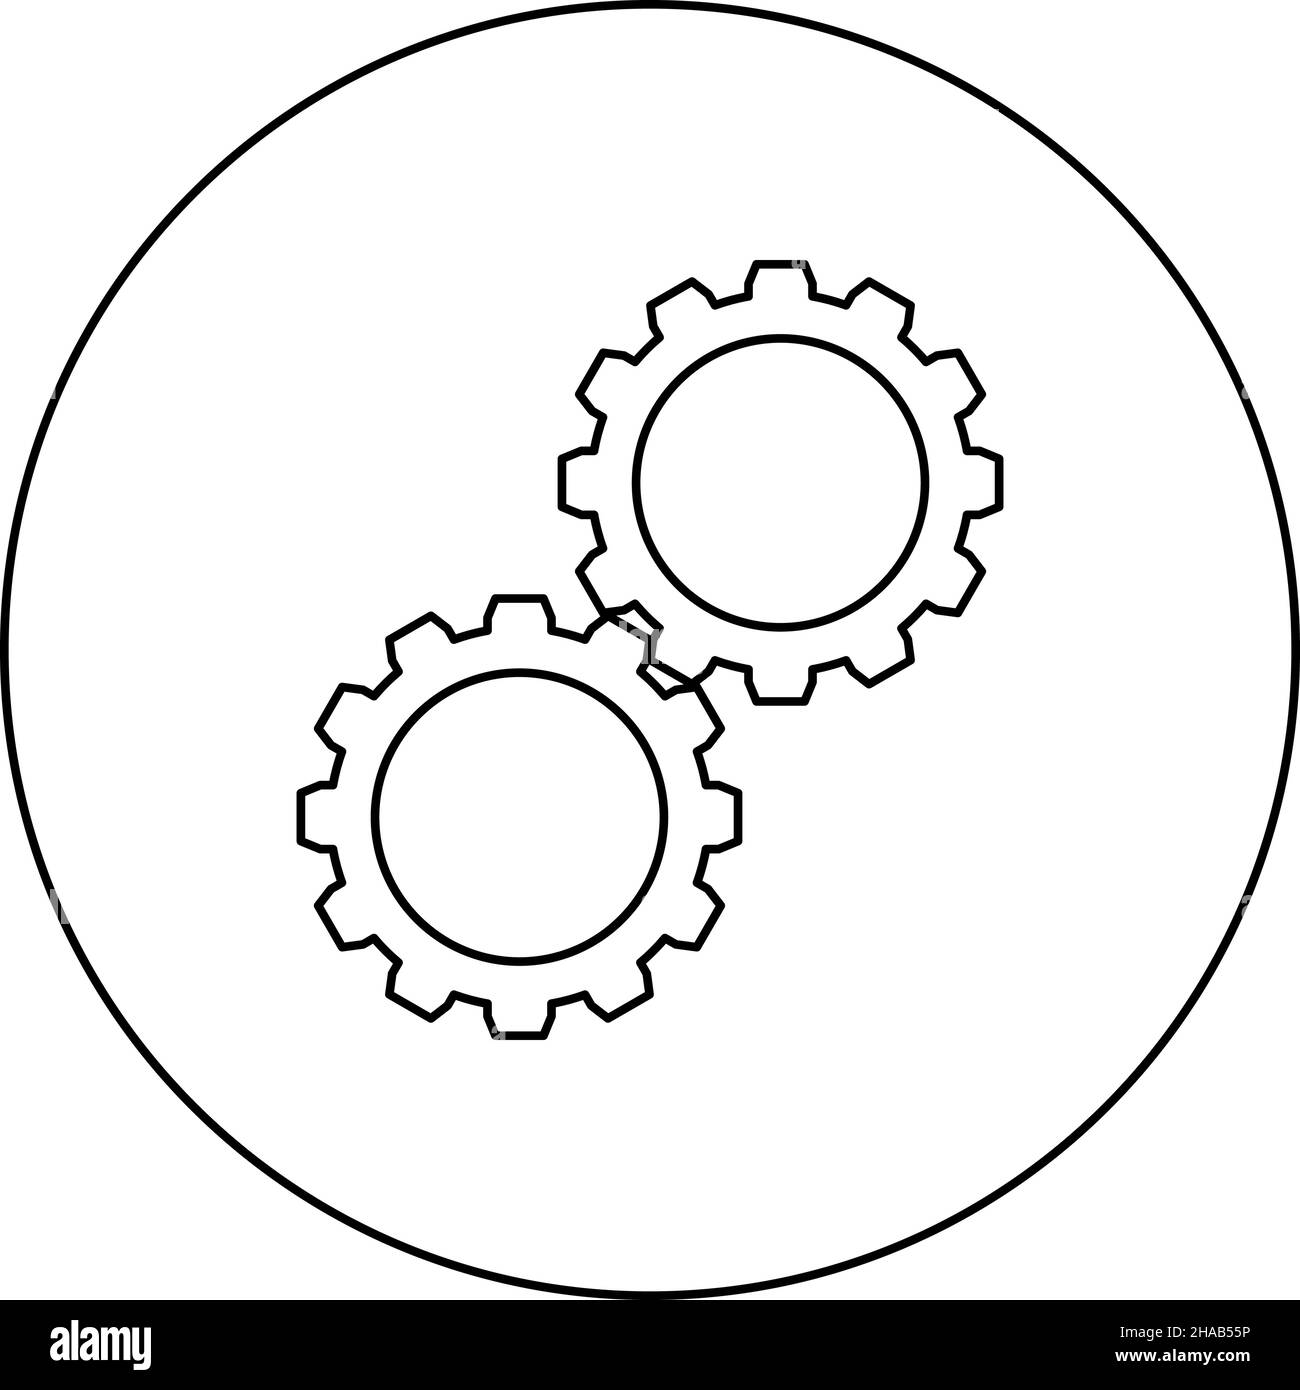 Zahnrad mit zwei Gängen Zahnräder Satz Zahnräder verbunden in Arbeitsmechanismus Symbol im Kreis Runde schwarze Farbe Vektor Illustration Bild umreißen Konturlinie Stock Vektor